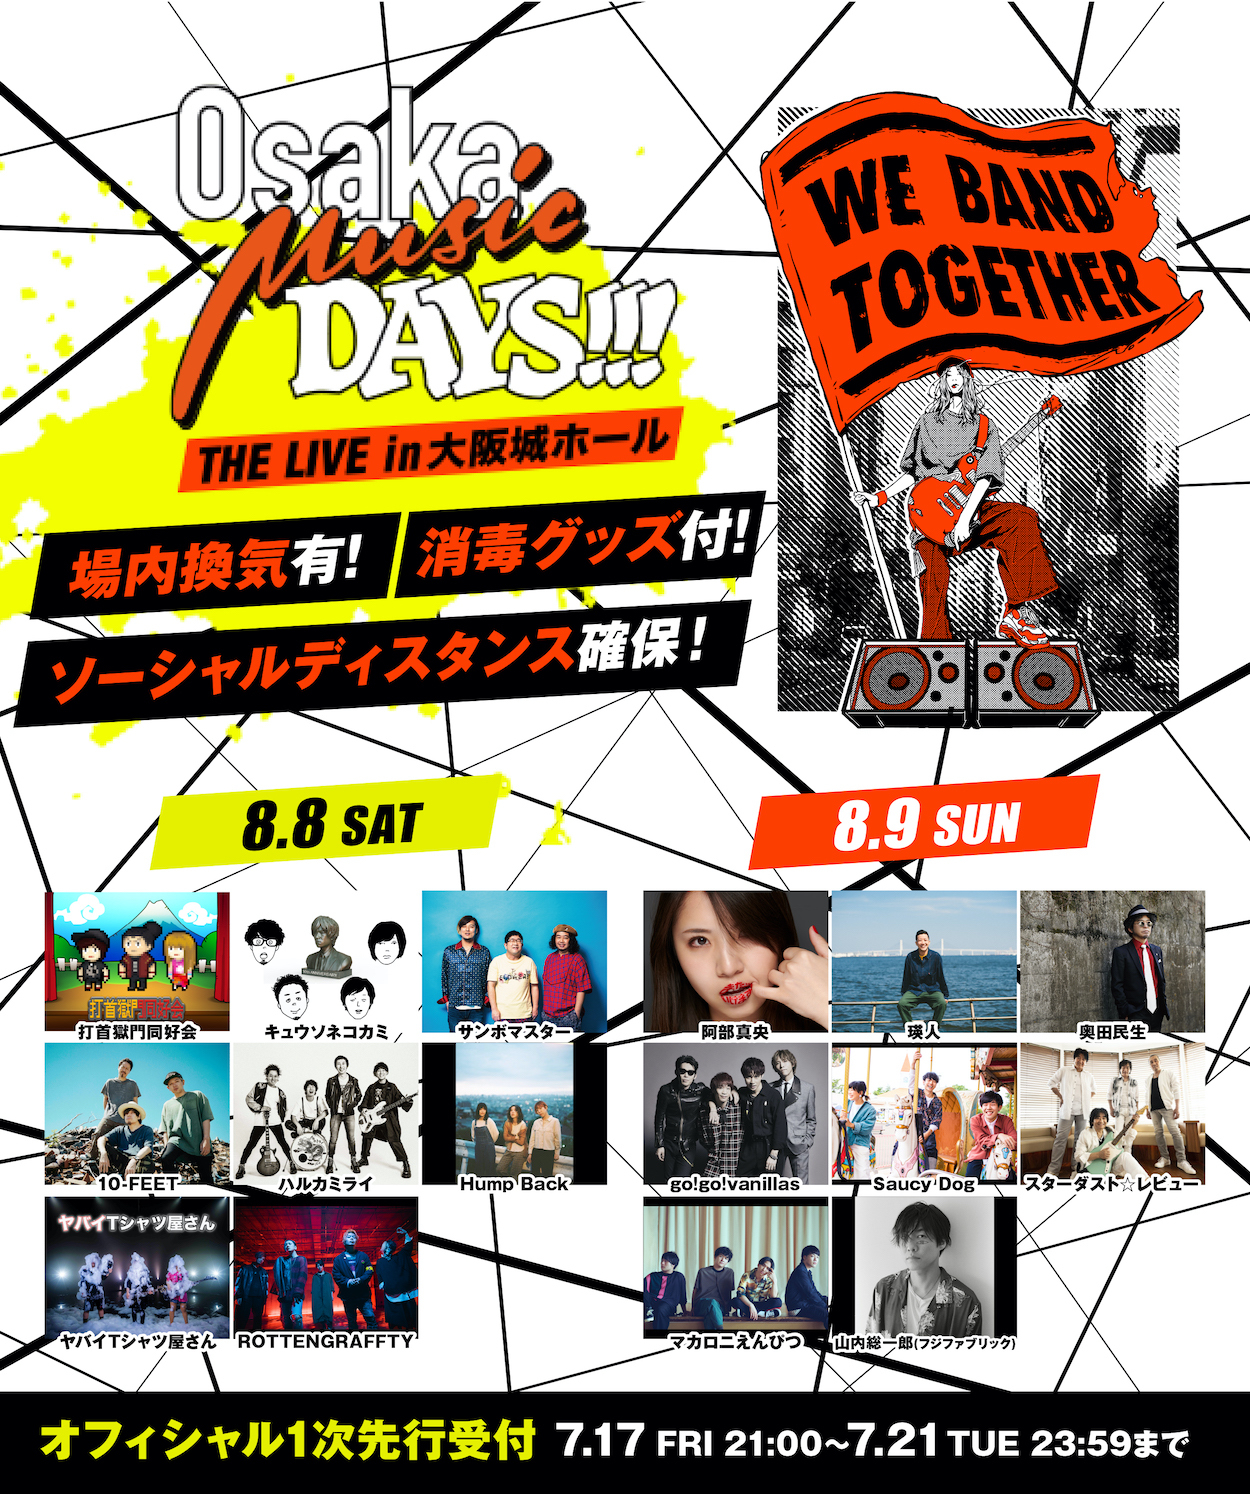 『Osaka Music DAYS!!!』